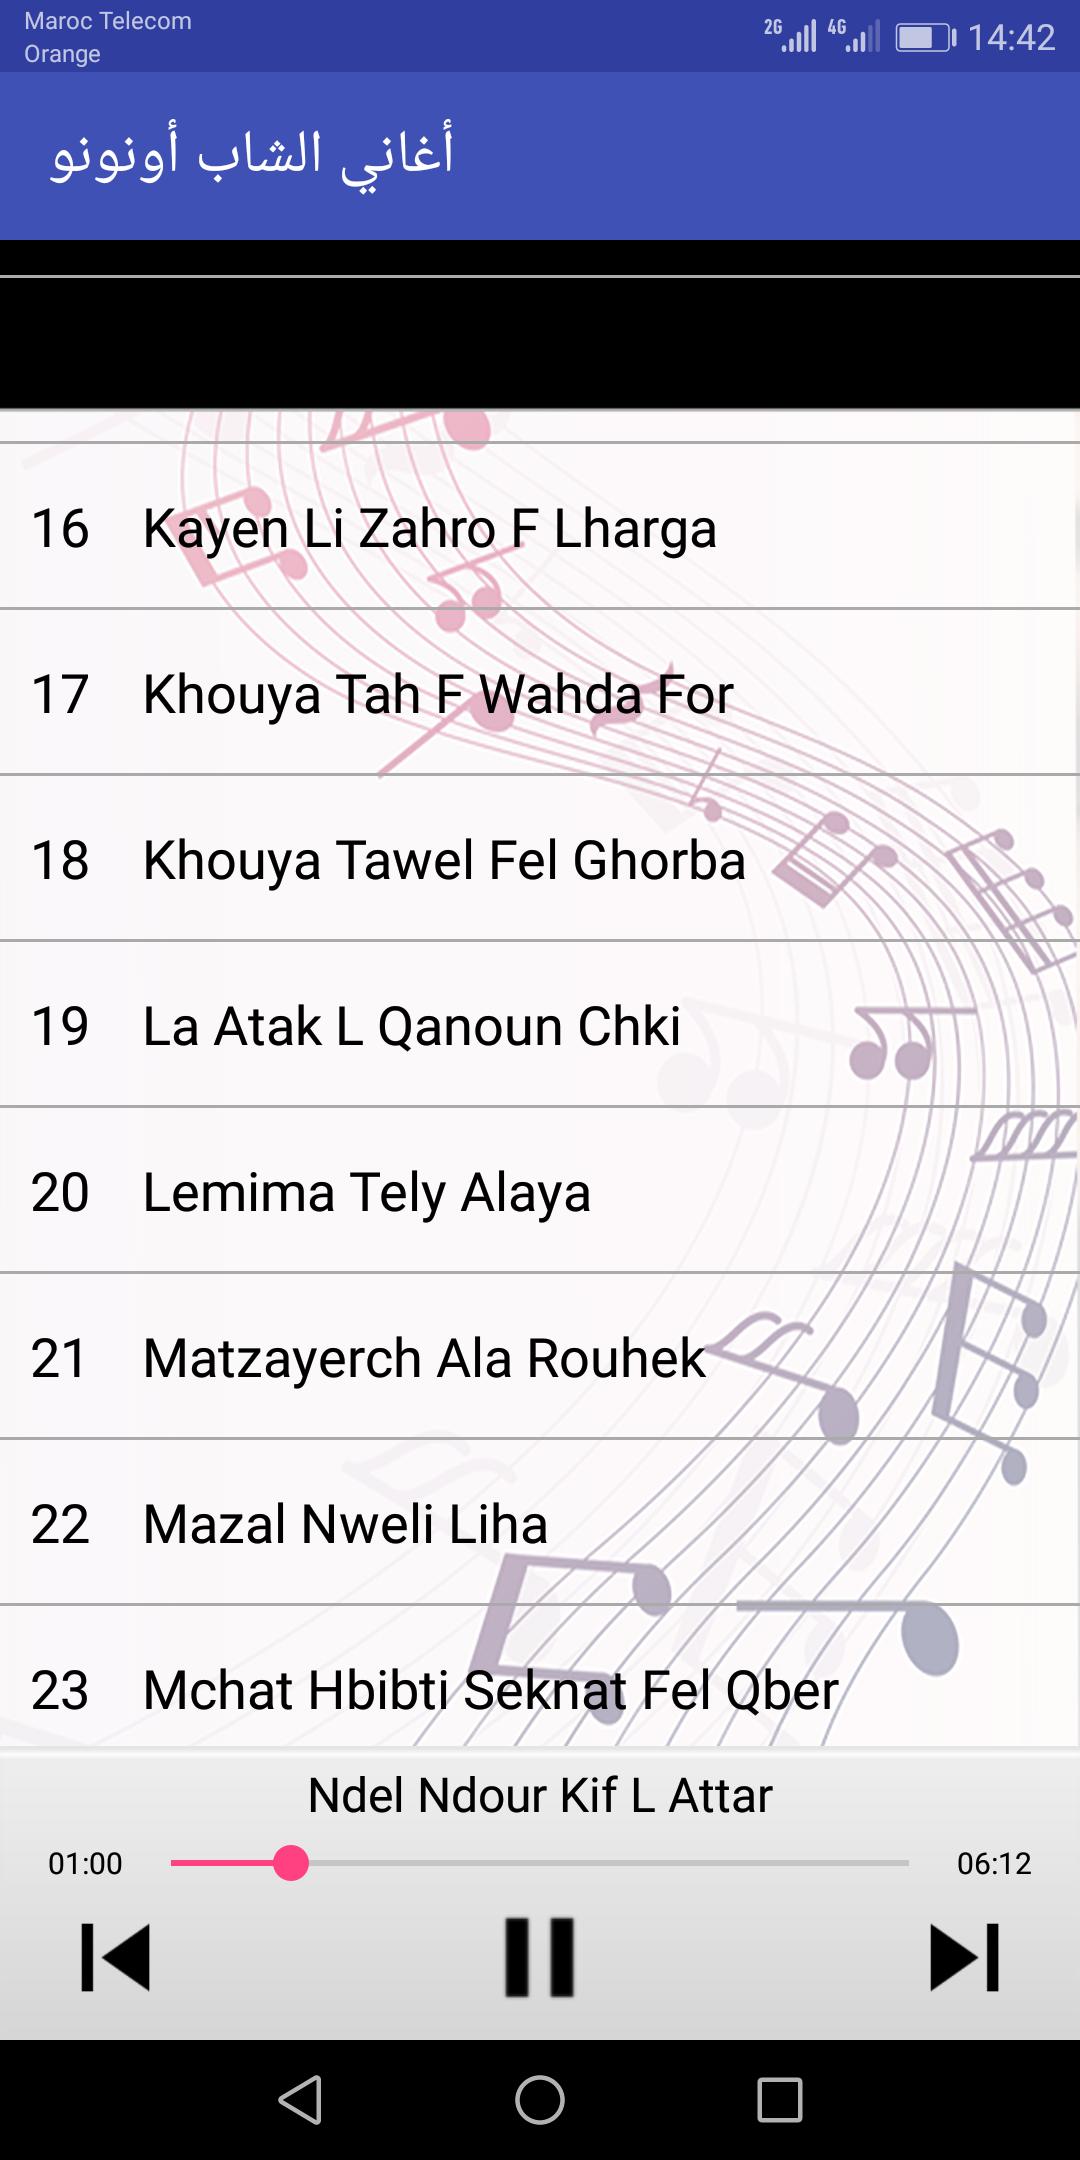 أغاني الشاب أنونو - Cheb Ounounou APK for Android Download